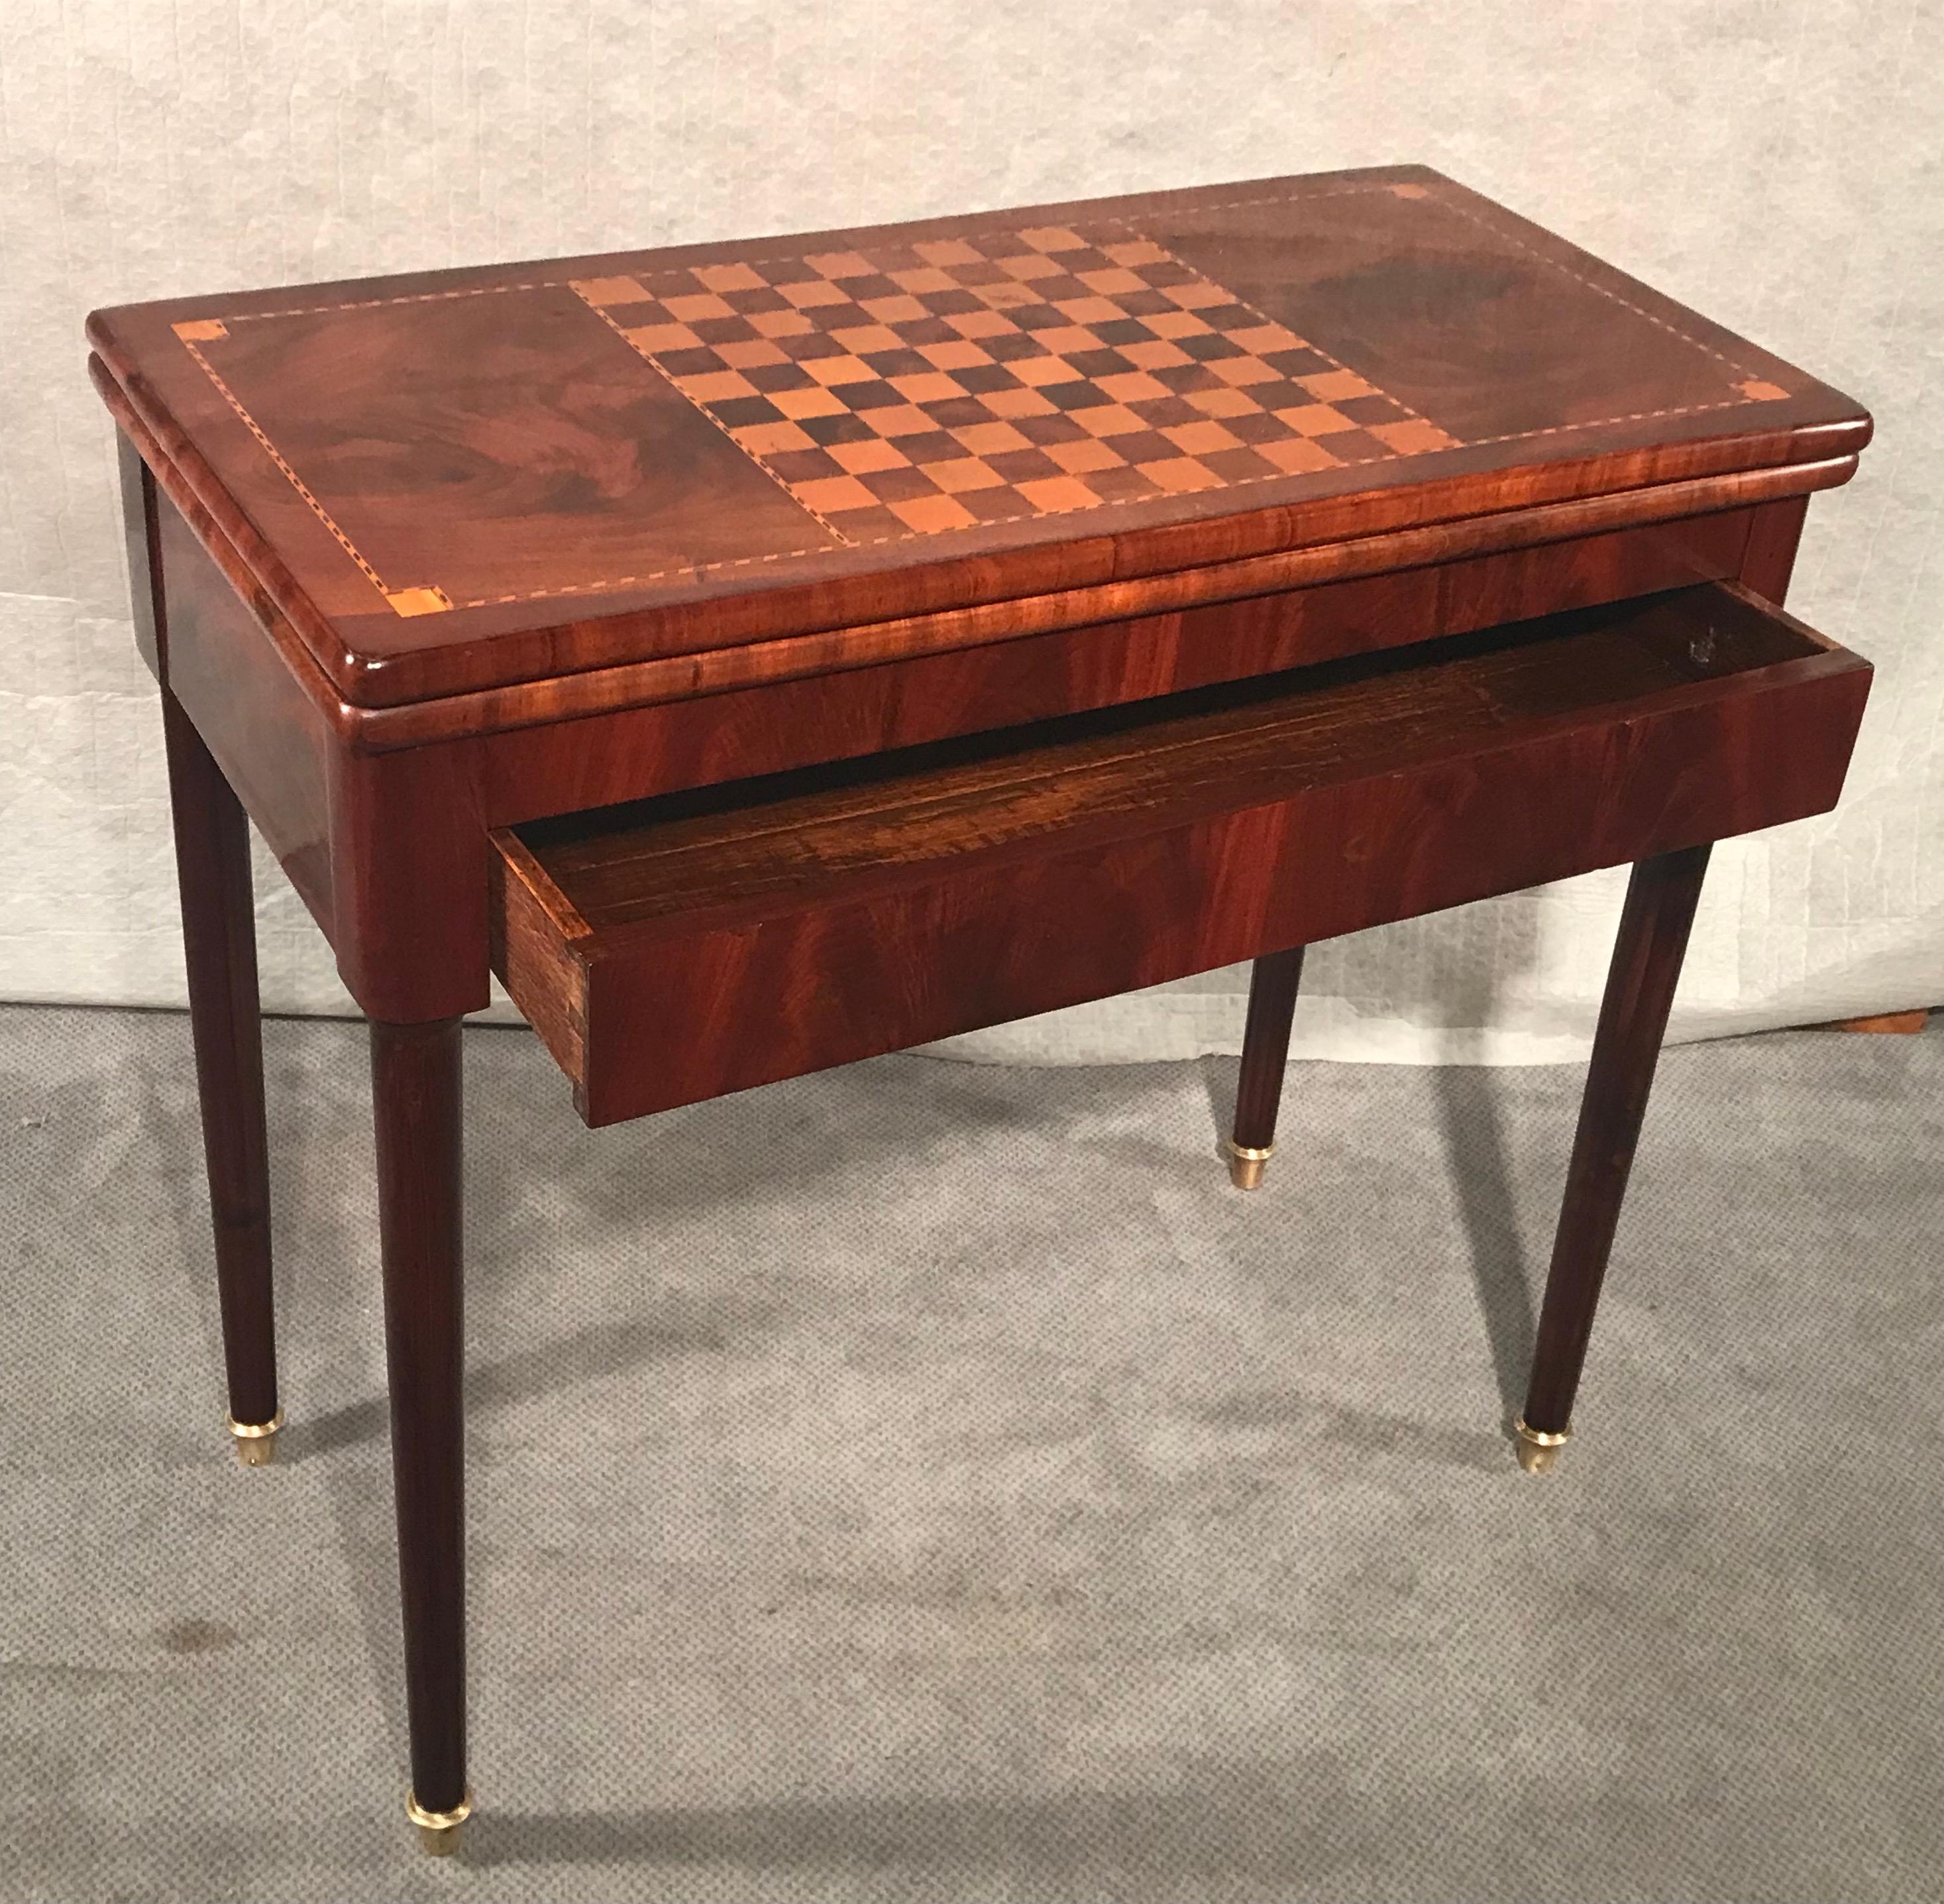 Dieser neoklassizistische Spieltisch aus Frankreich stammt aus den Jahren 1810-20. Auf der Oberseite befindet sich ein Schachbrett, das von einem eleganten Intarsienband umrahmt wird. Die Innenseite des Tisches ist mit grünem Filz verziert. Die